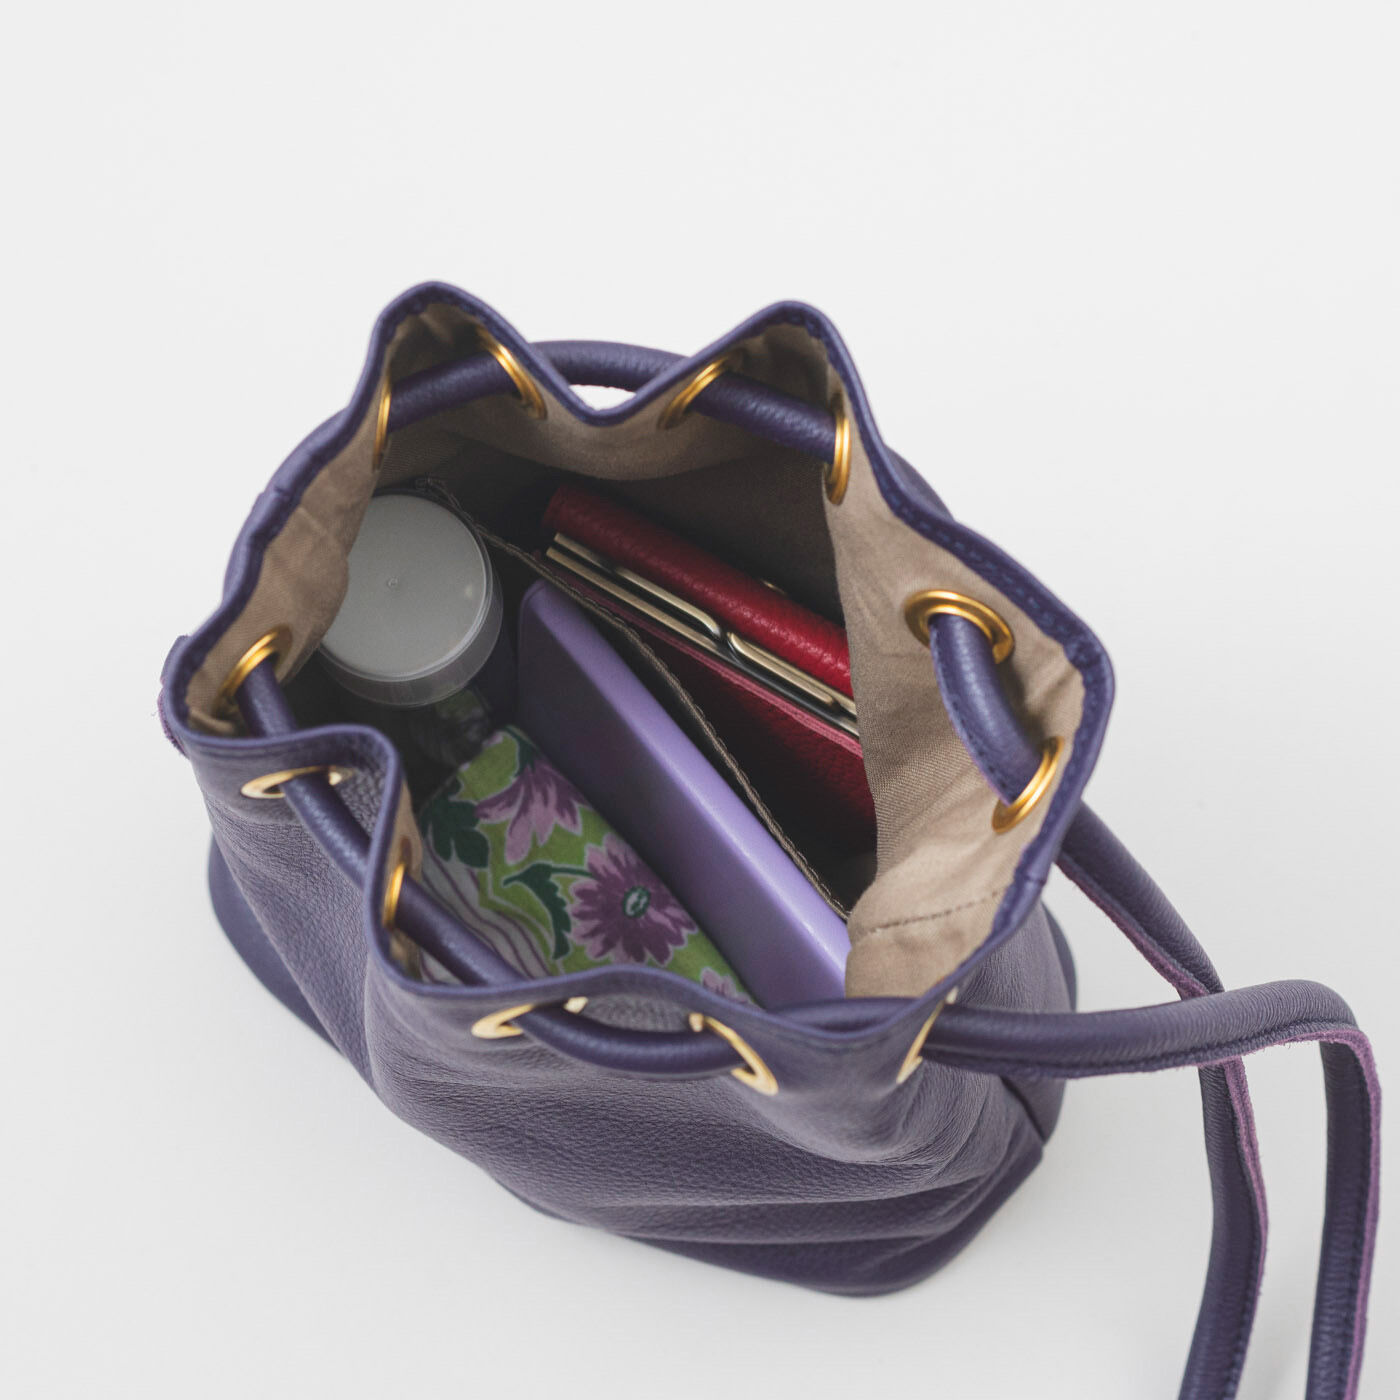 ＆Stories|福岡の鞄作家が作った 職人本革の巾着バッグ〈葡萄色〉|今どき感ある小ぶりサイズながら、まち幅と深さがあるので、水筒や長財布もすっぽり収納。